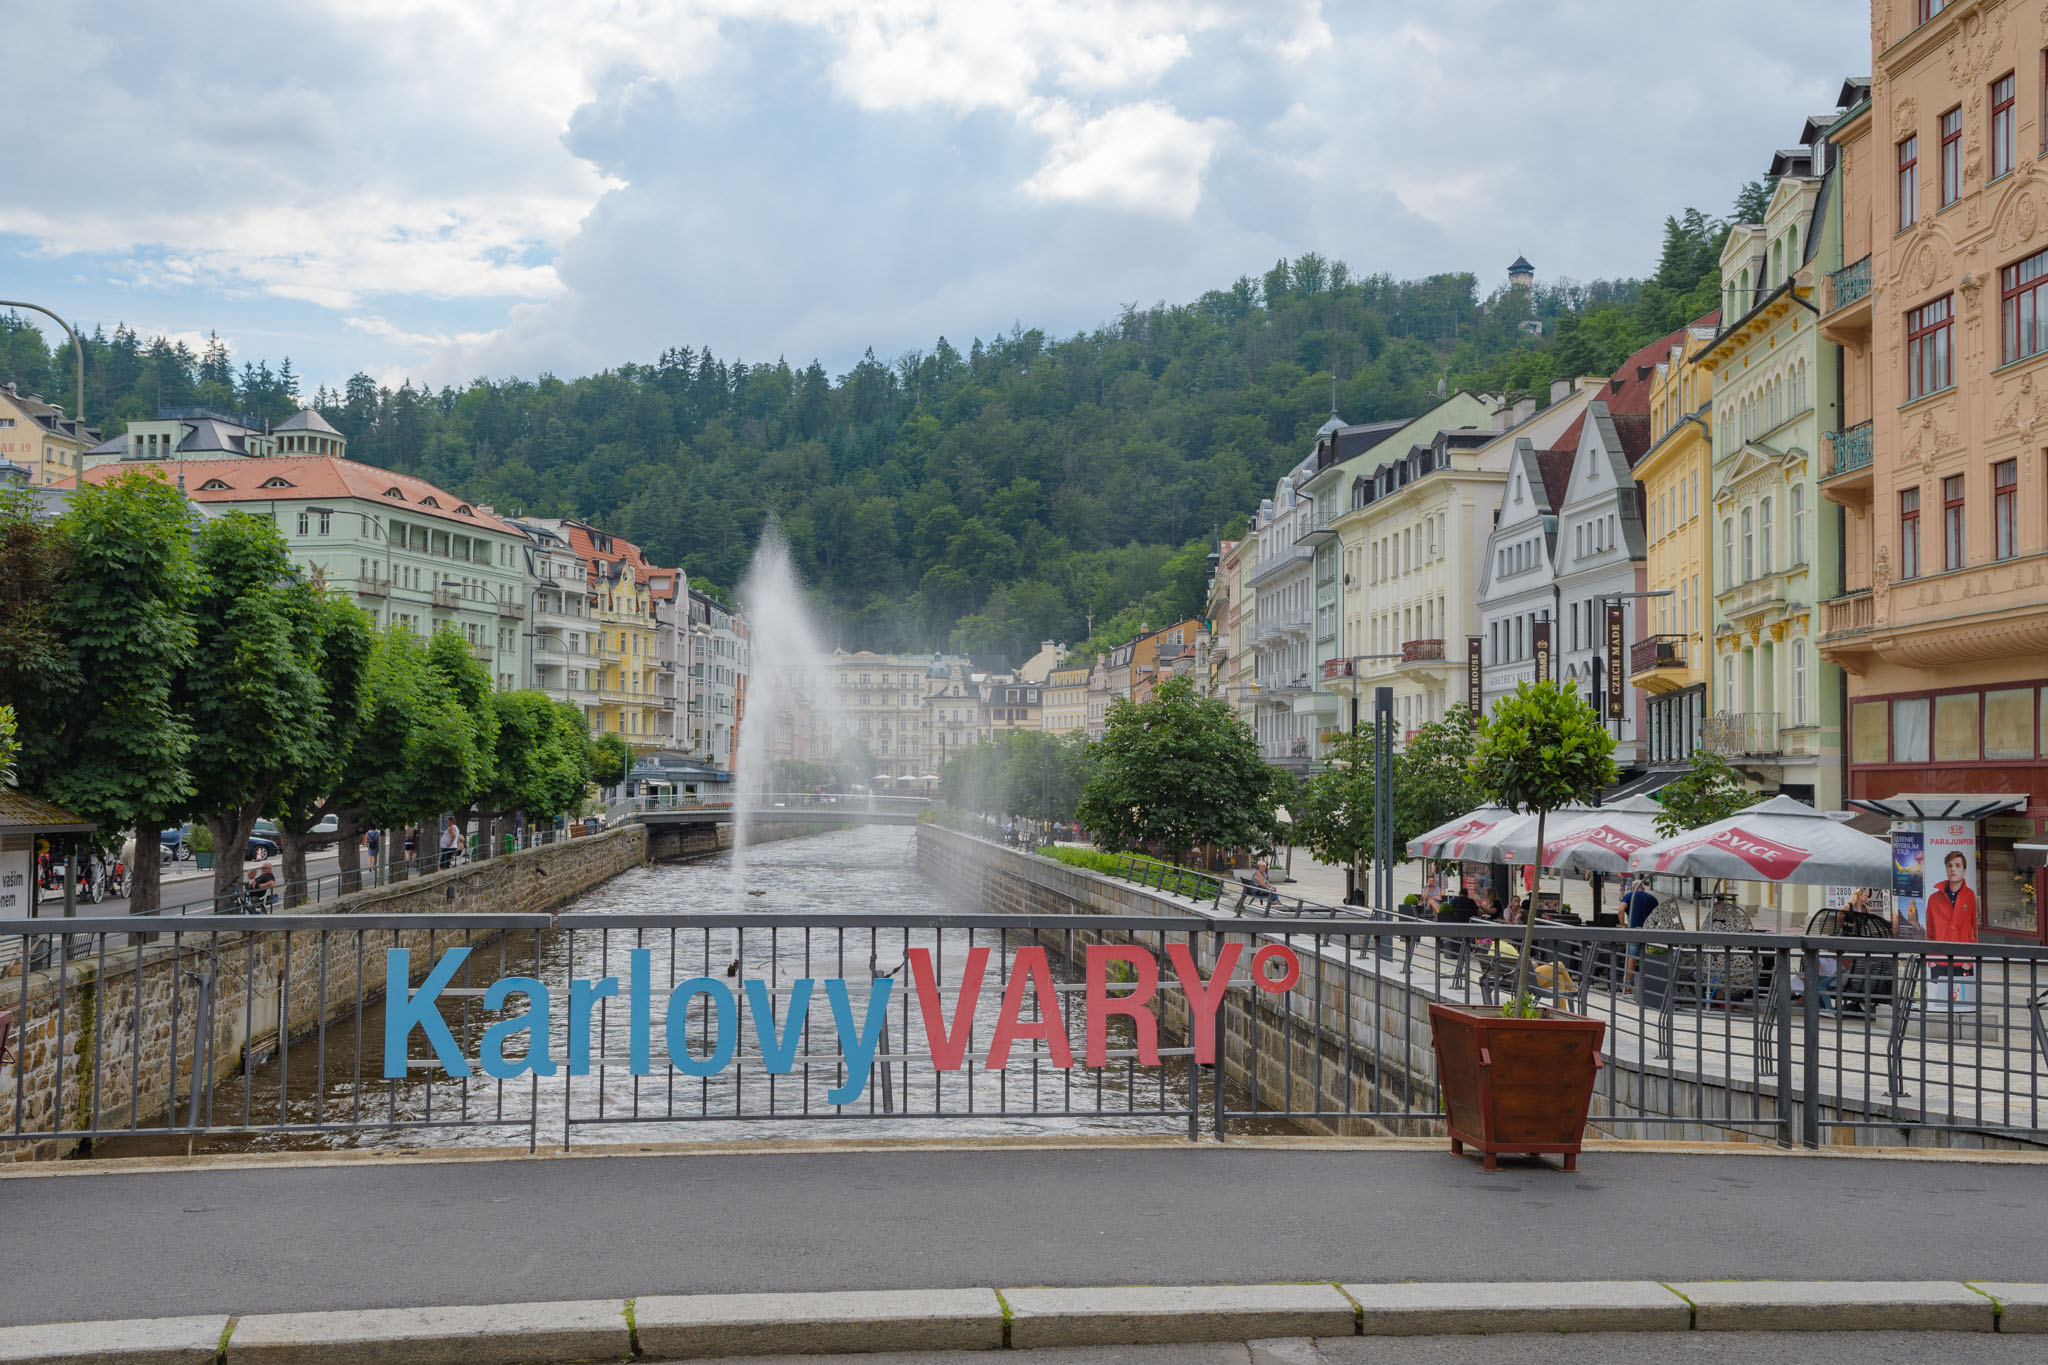 Karlsbad/Karlovy Vary